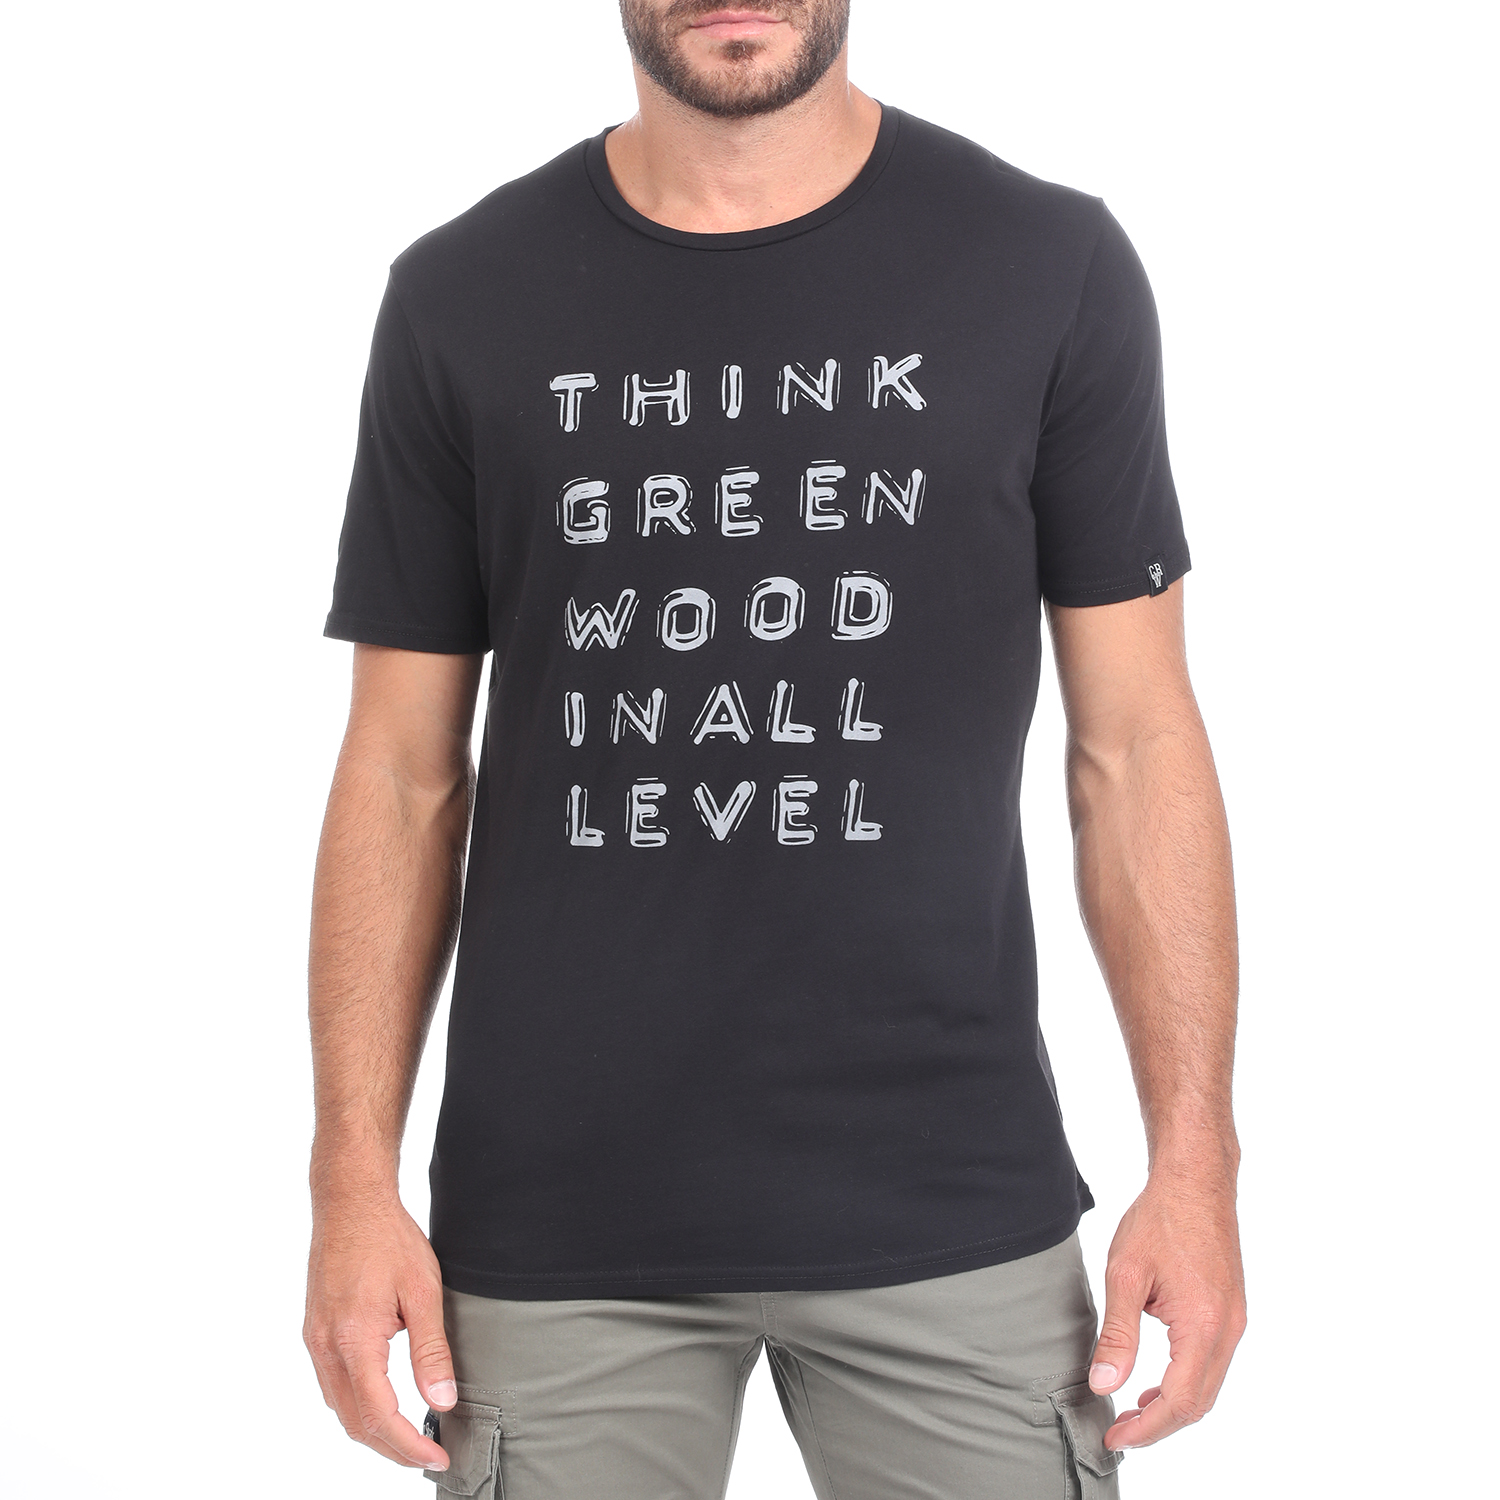 Ανδρικά/Ρούχα/Μπλούζες/Κοντομάνικες GREENWOOD - Ανδρική κοντομάνικη μπλούζα GREENWOOD GRW33 WASHED μαύρο